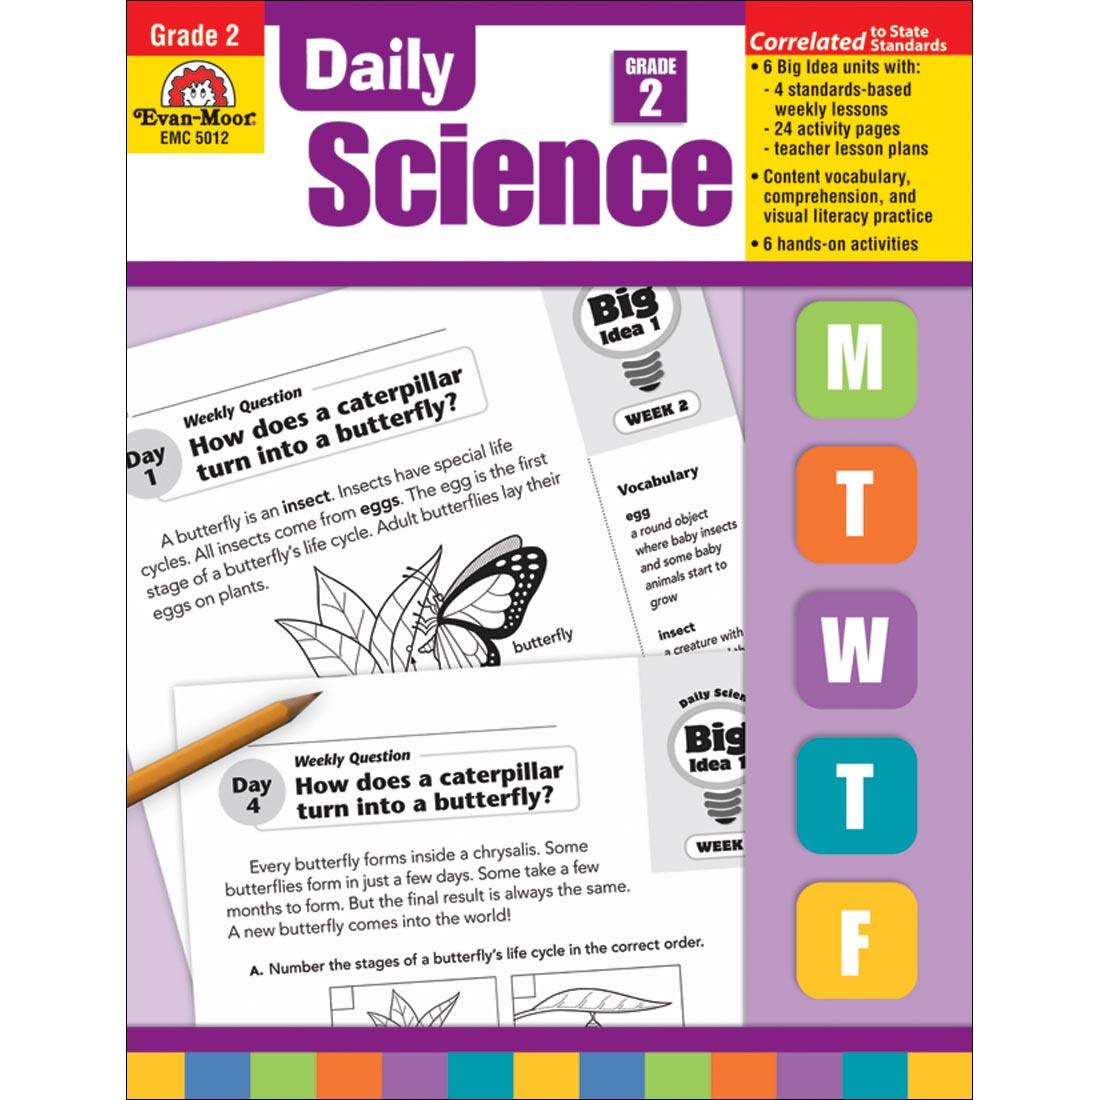 Daily Science Book by Evan-Moor Grade 2